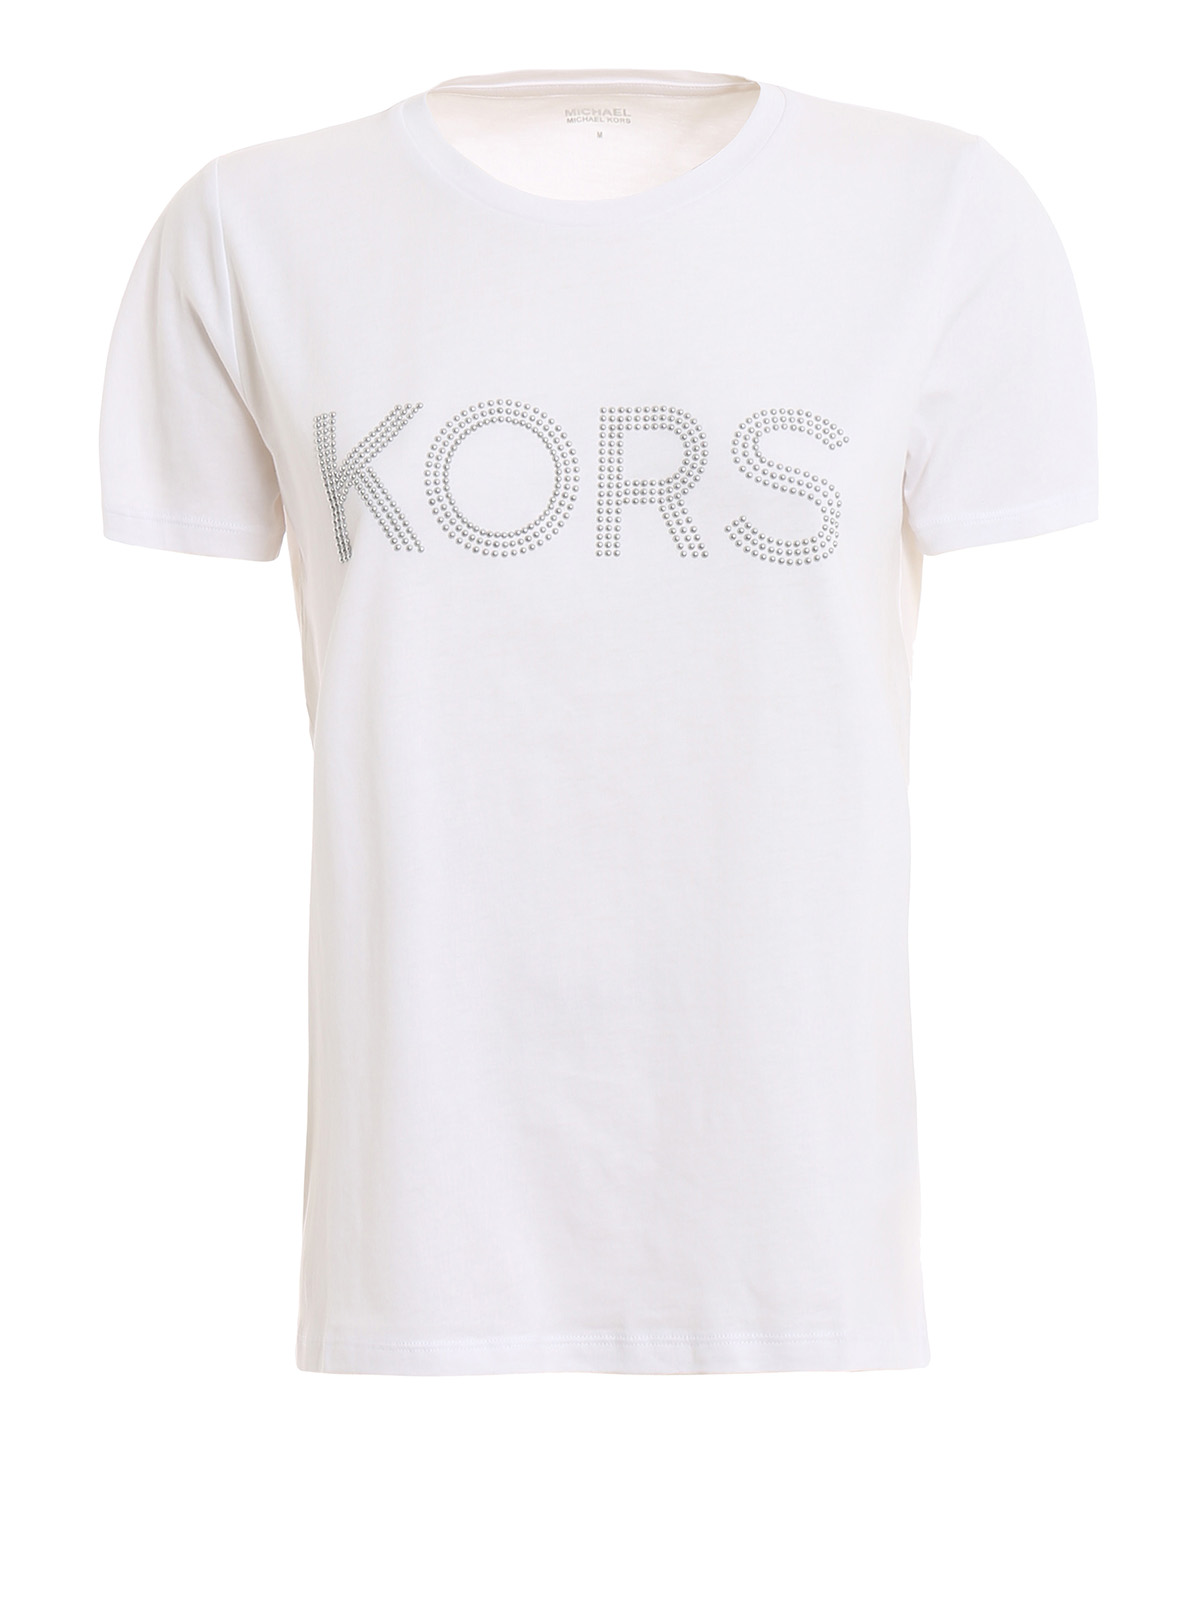 Michael Kors - Studded Kors logo cotton 